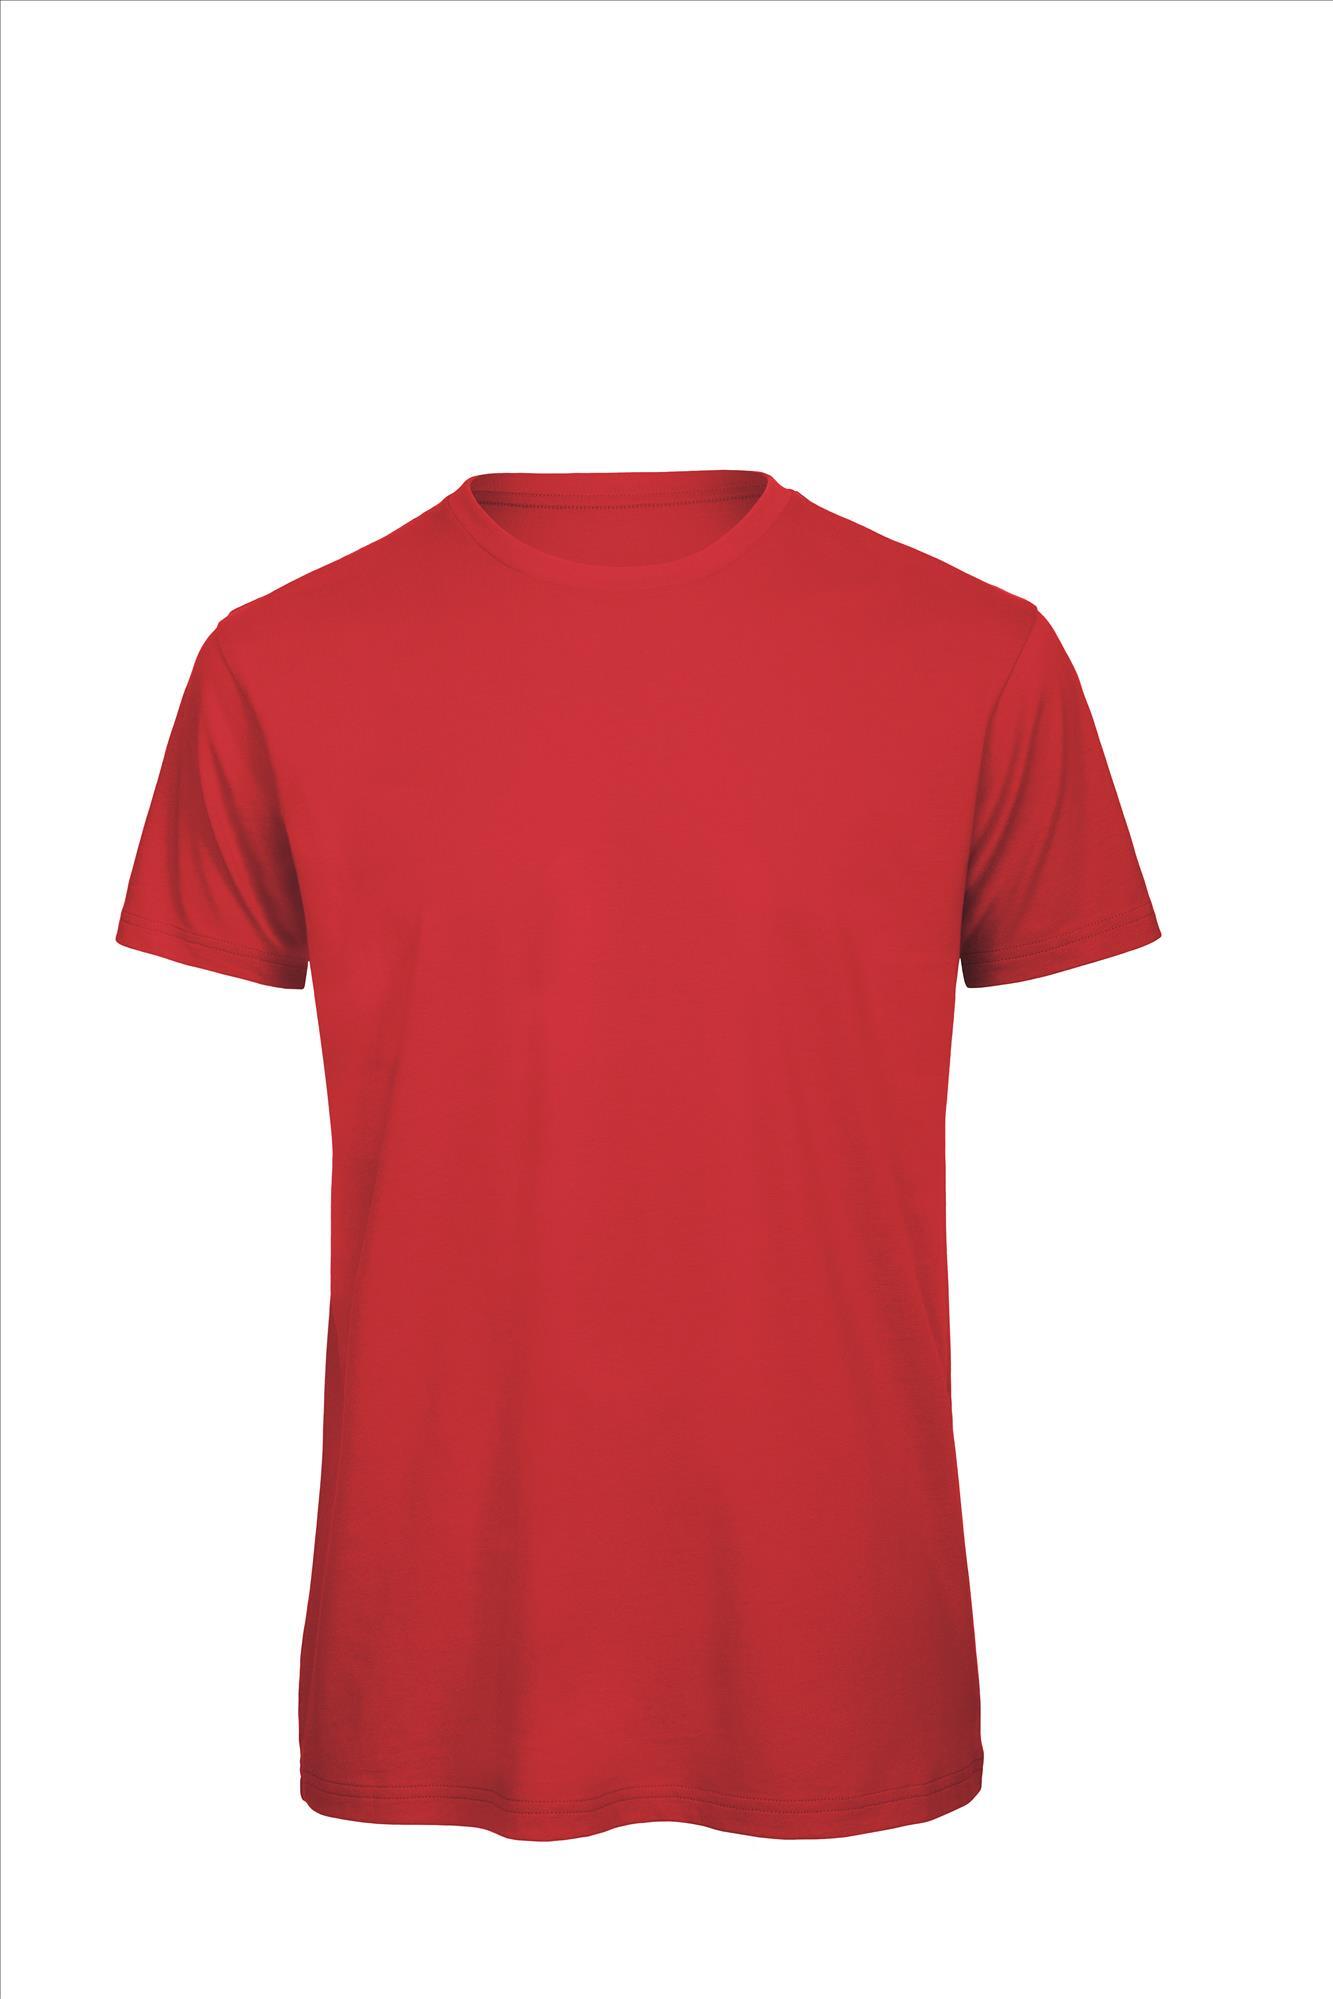 Heren T-shirt rood te personaliseren bedrukbaar duurzaam shirt